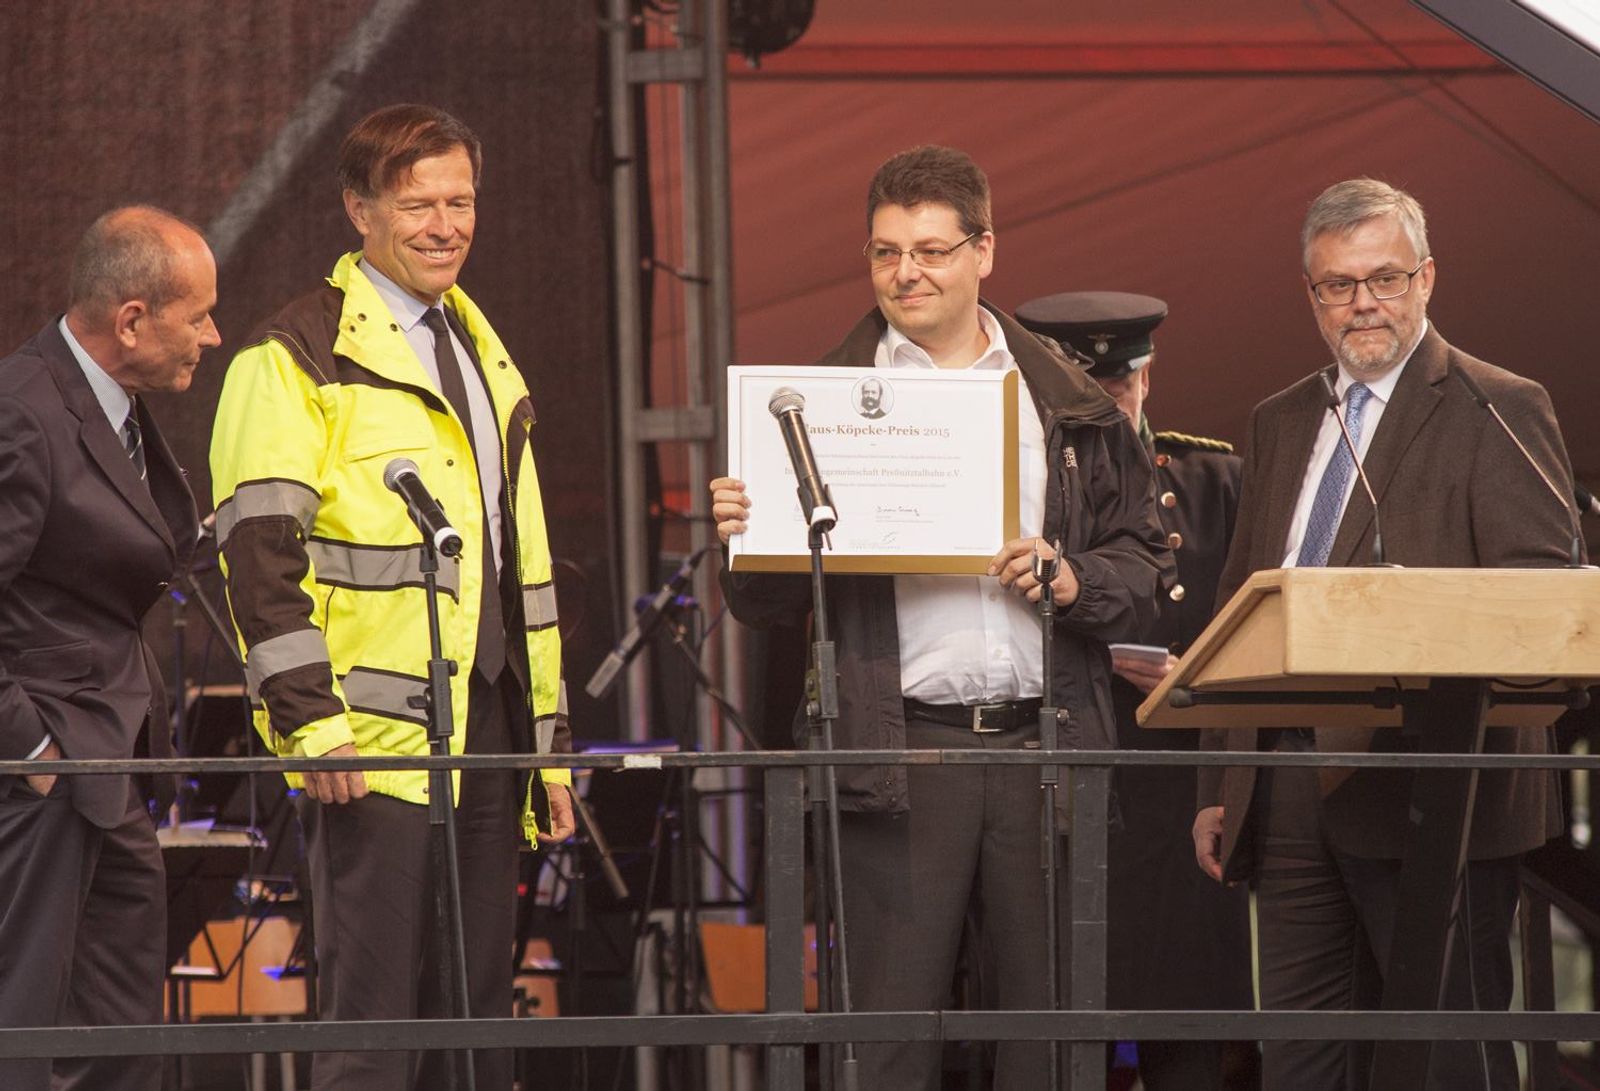 Vereinsgeschäftsführer Gerald Seifert nimmt von Bodo Finger und Matthias Rösler sowie Dr. Andreas Winkler die Urkunde für den „Claus-Köpcke-Preis 2015“ entgegen.